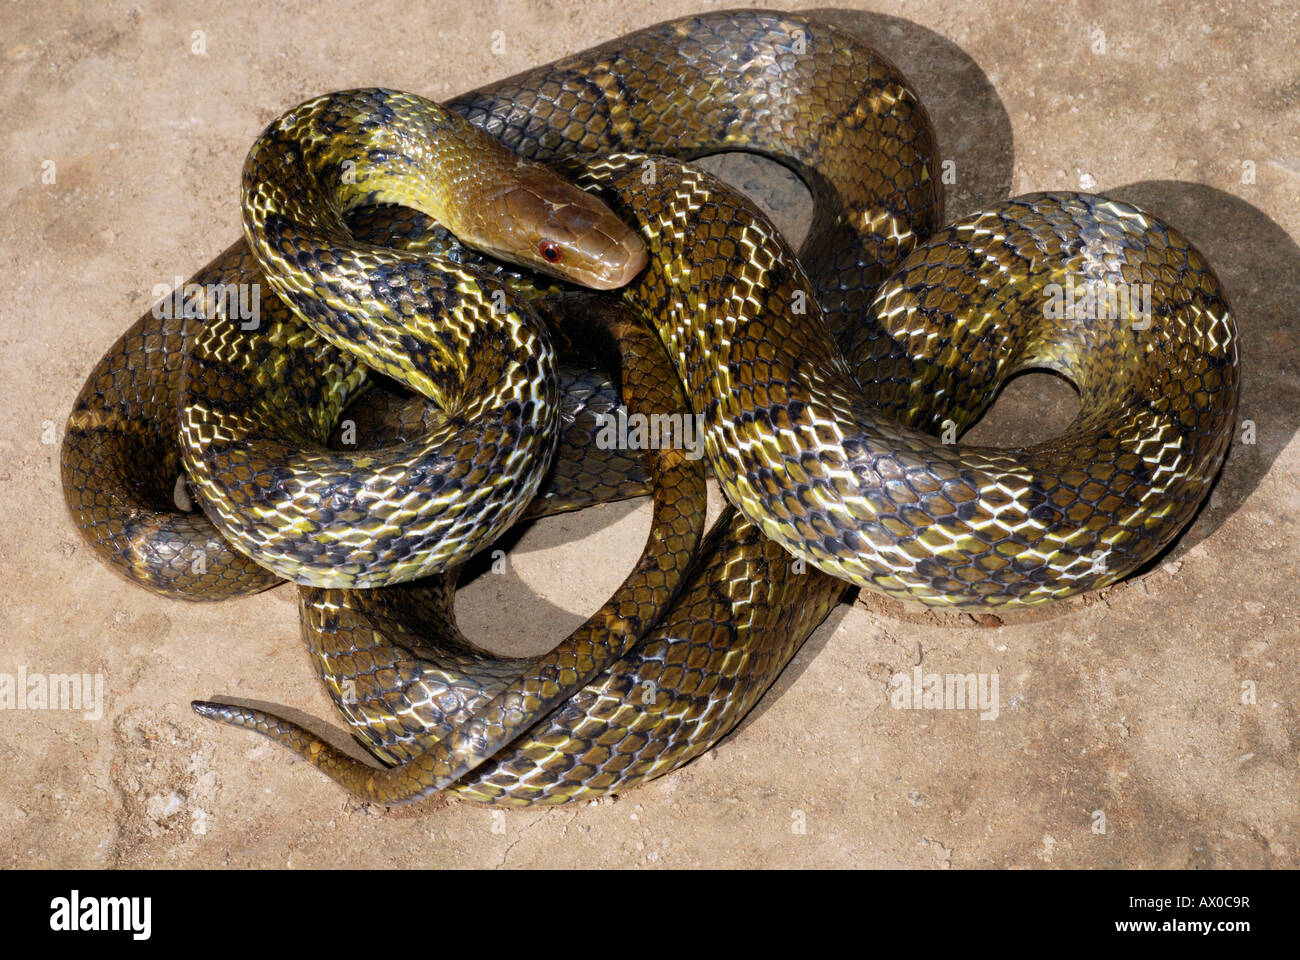 ÖSTLICHEN Schmuckstück Schlange, Elaphe Helena, ist eine Art von Colubrid Schlange. Nicht Venomous, ungewöhnlich, N.E. Arunachal Pradesh, Indien Stockfoto